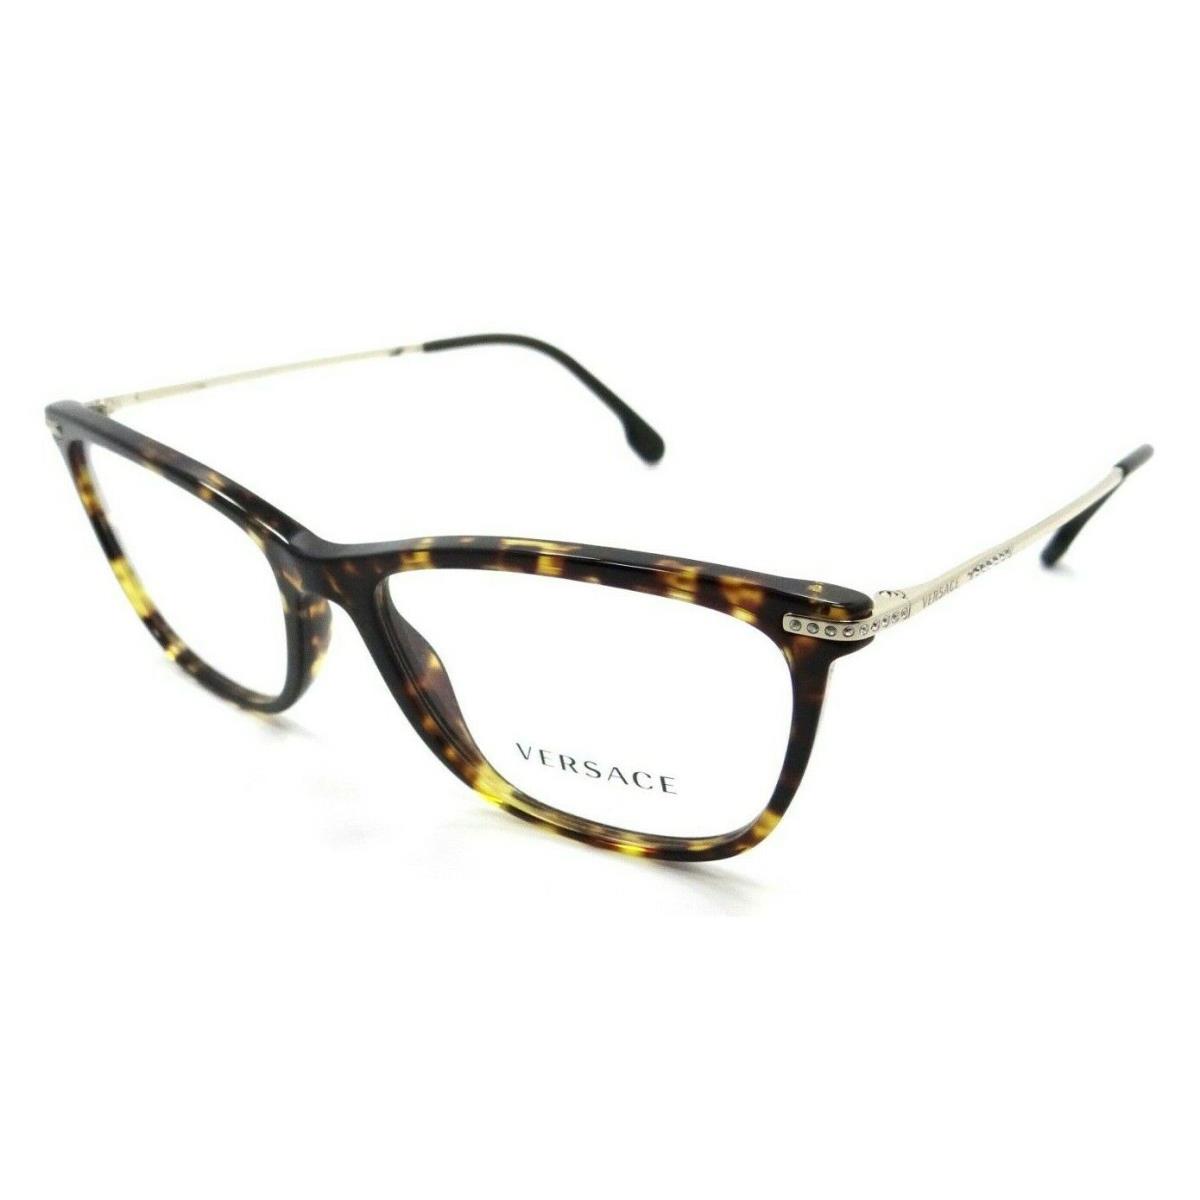 Versace Eyeglasses Frames VE 3274B 108 54-16-140 Dark Havana Made in Italy